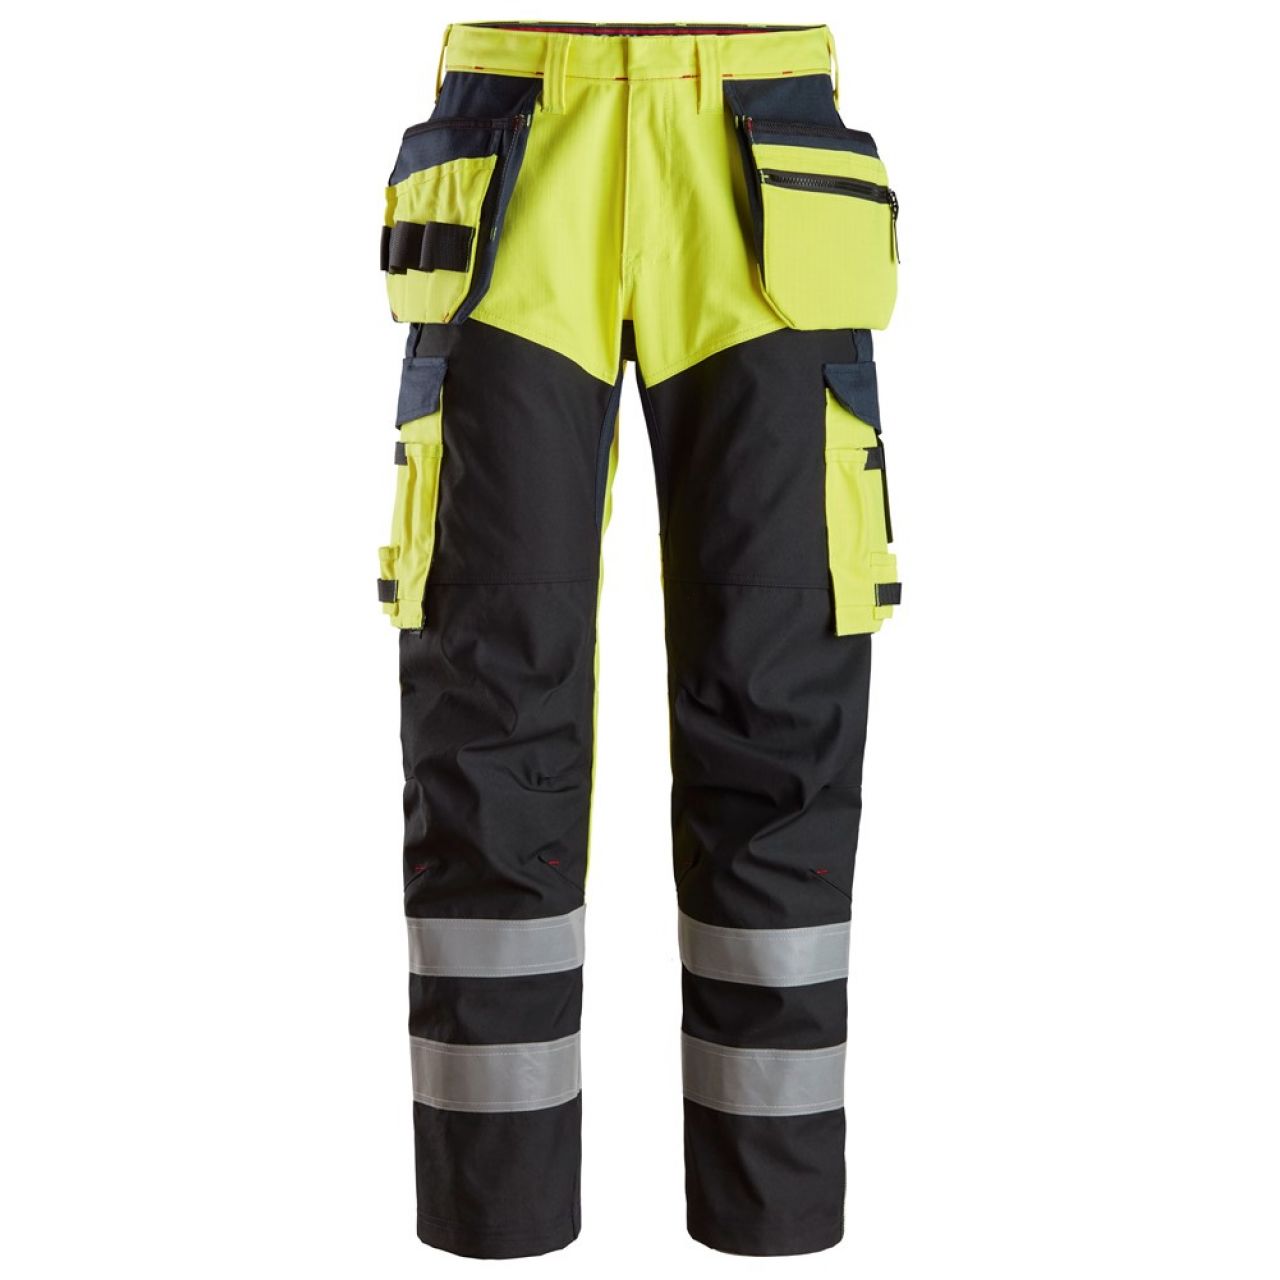 6265 Pantalones largos de trabajo de alta visibilidad clase 1 con bolsillos flotantes y espinilla reforzada ProtecWork amarillo-azul marino talla 96